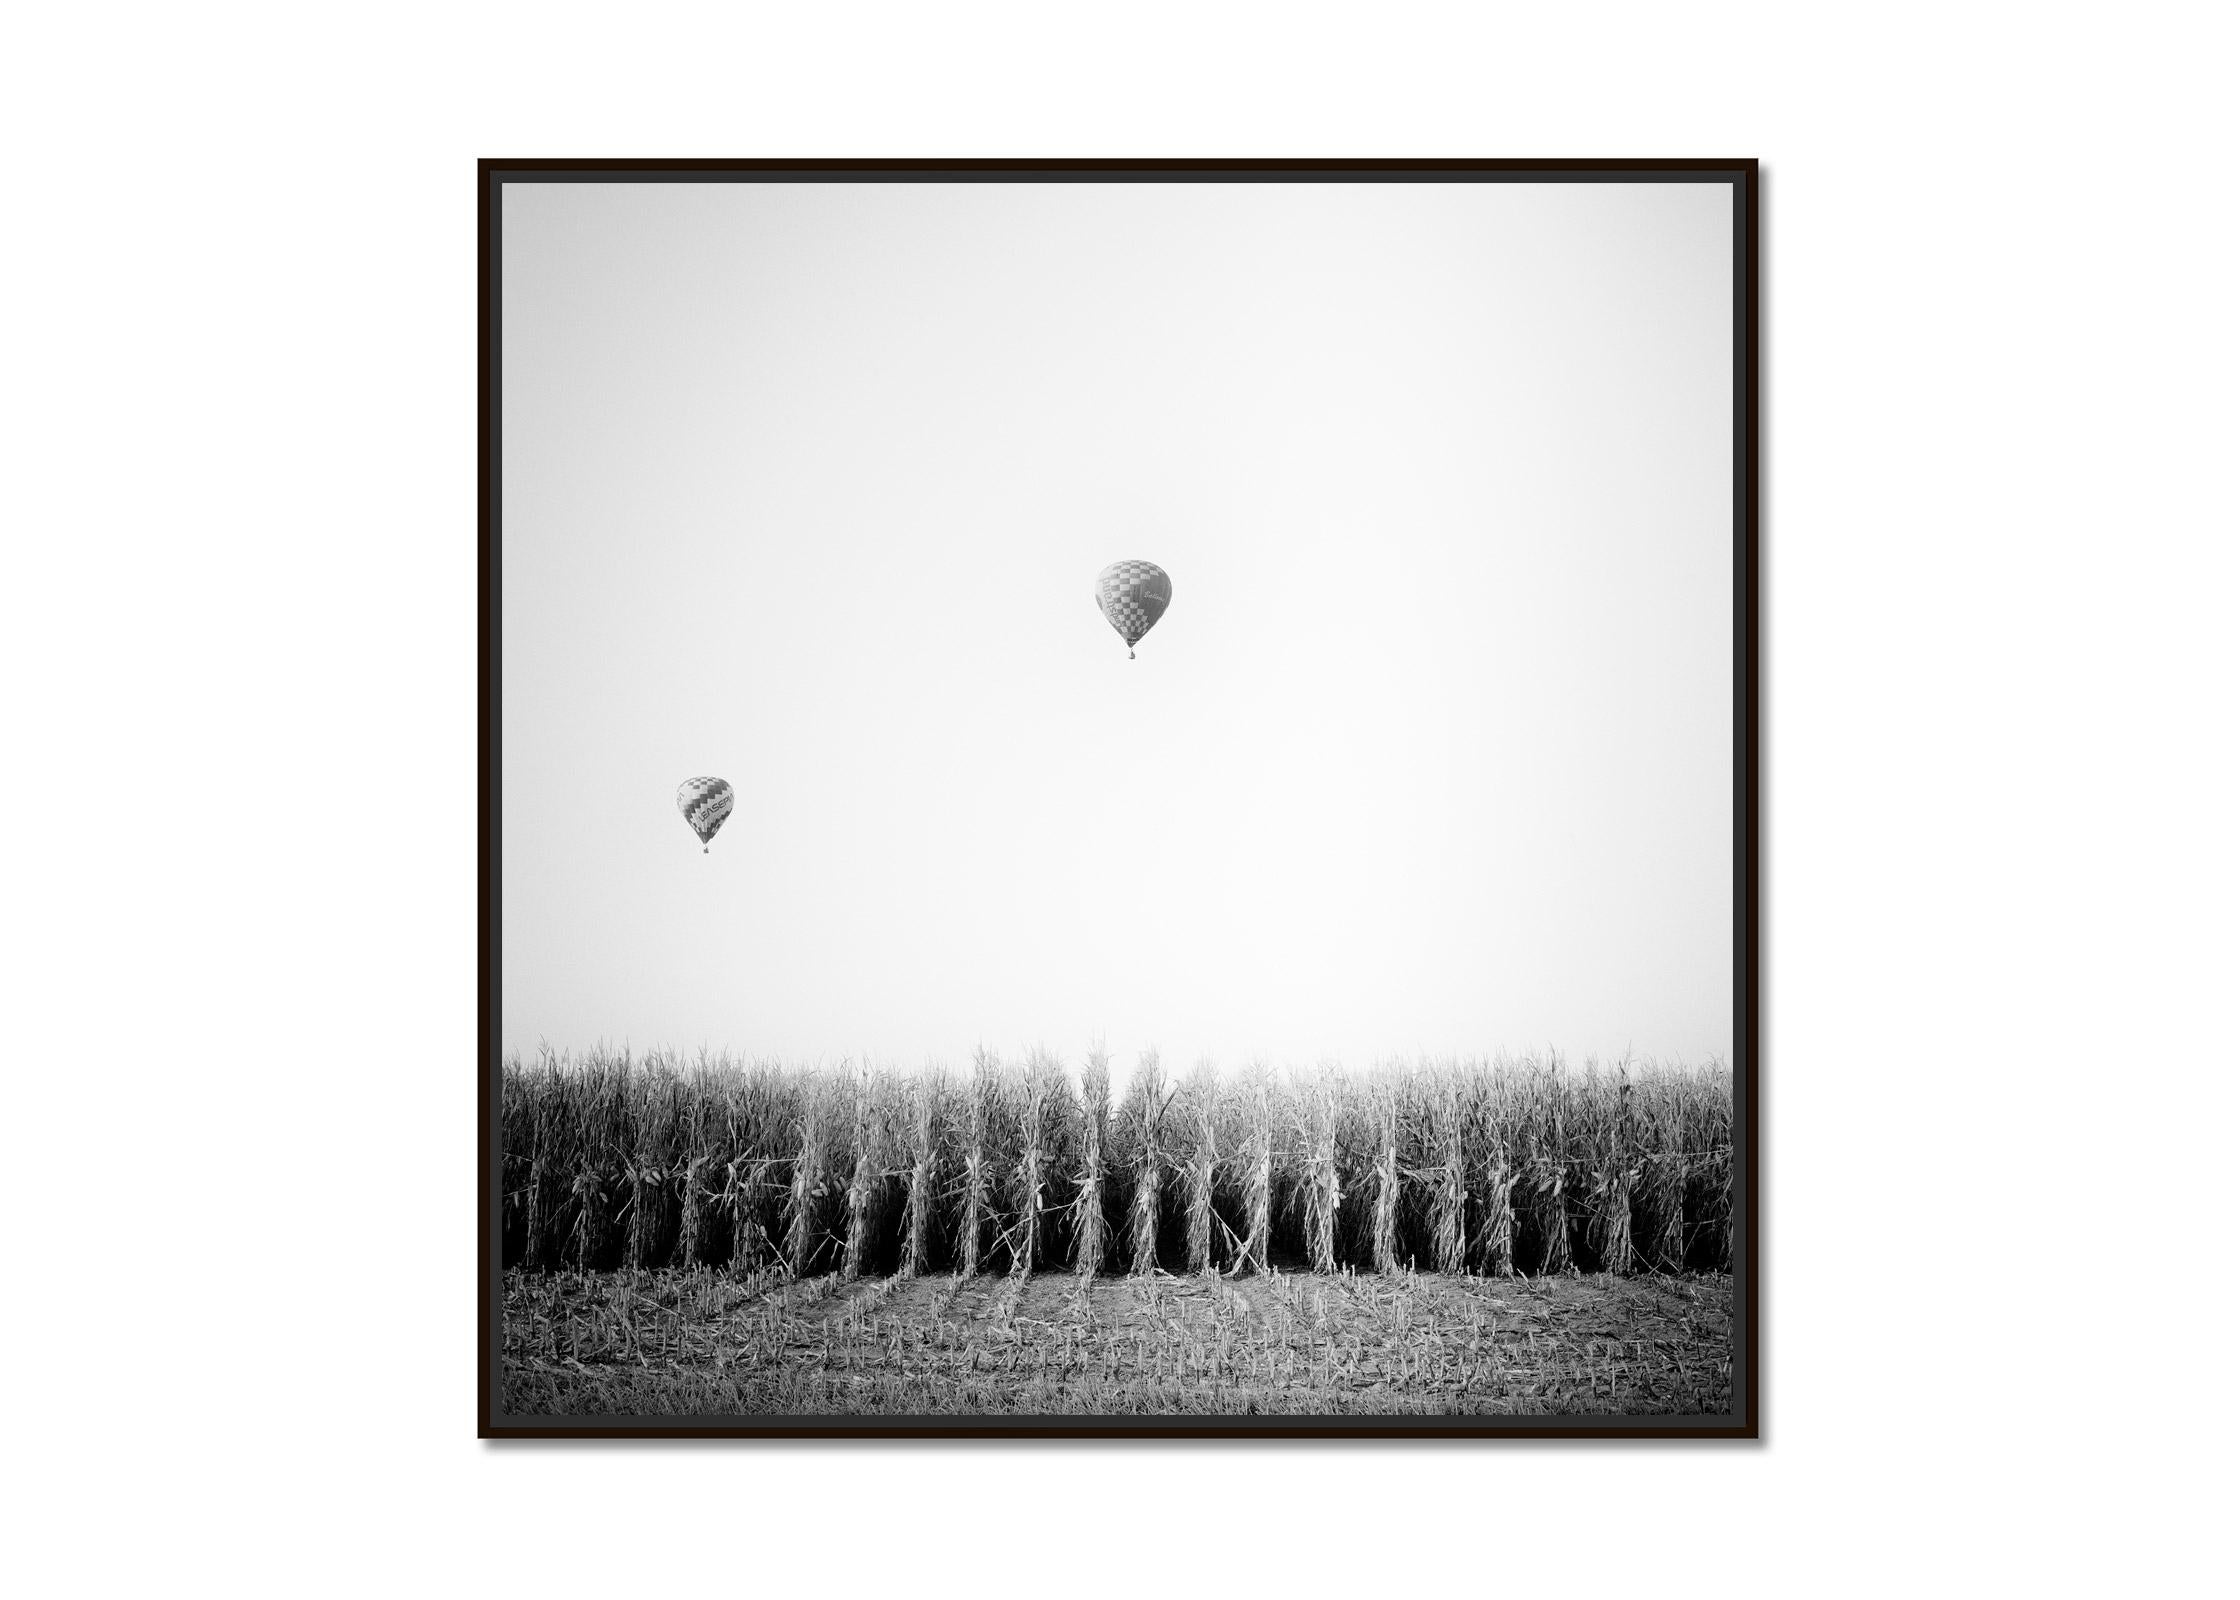 Hot Air Balloon, Cornfield, Championship, Schwarz-Weiß-Landschaftsfotodruck – Photograph von Gerald Berghammer